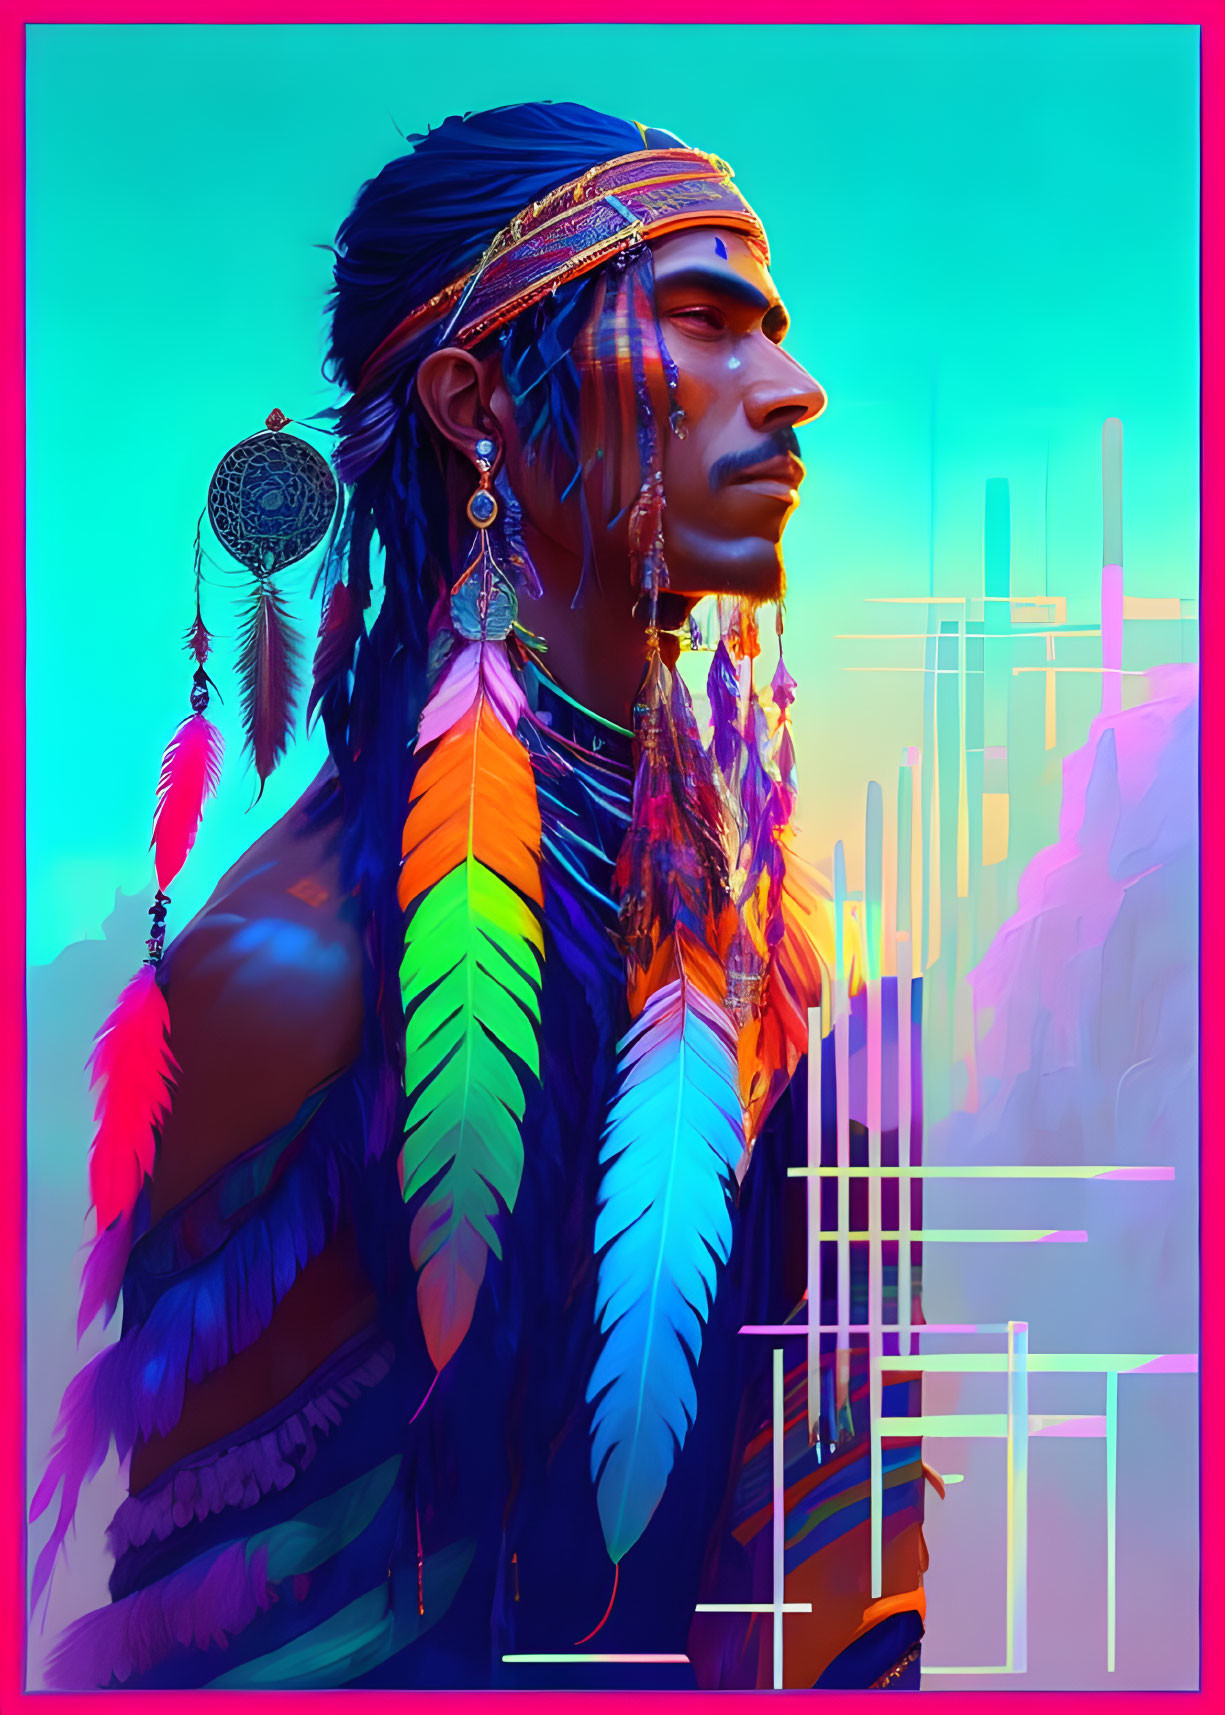 Colorful Digital Art of Native American Man in Desert